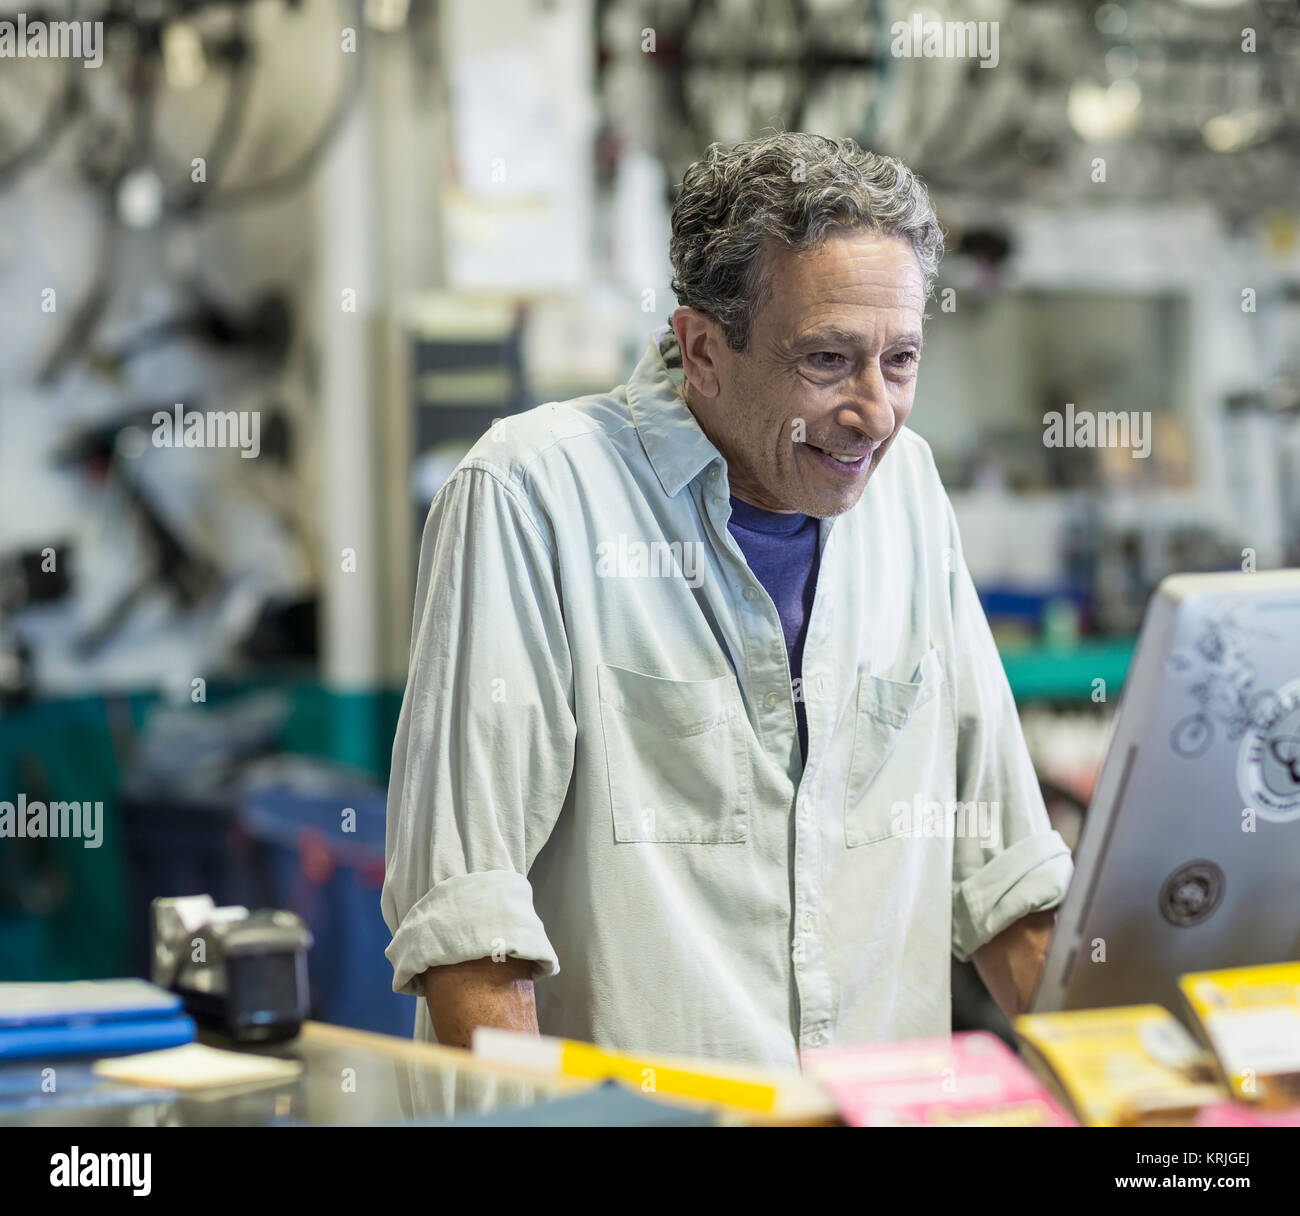 Sonriente hombre caucásico utilizando el ordenador en la tienda de bicicletas Foto de stock